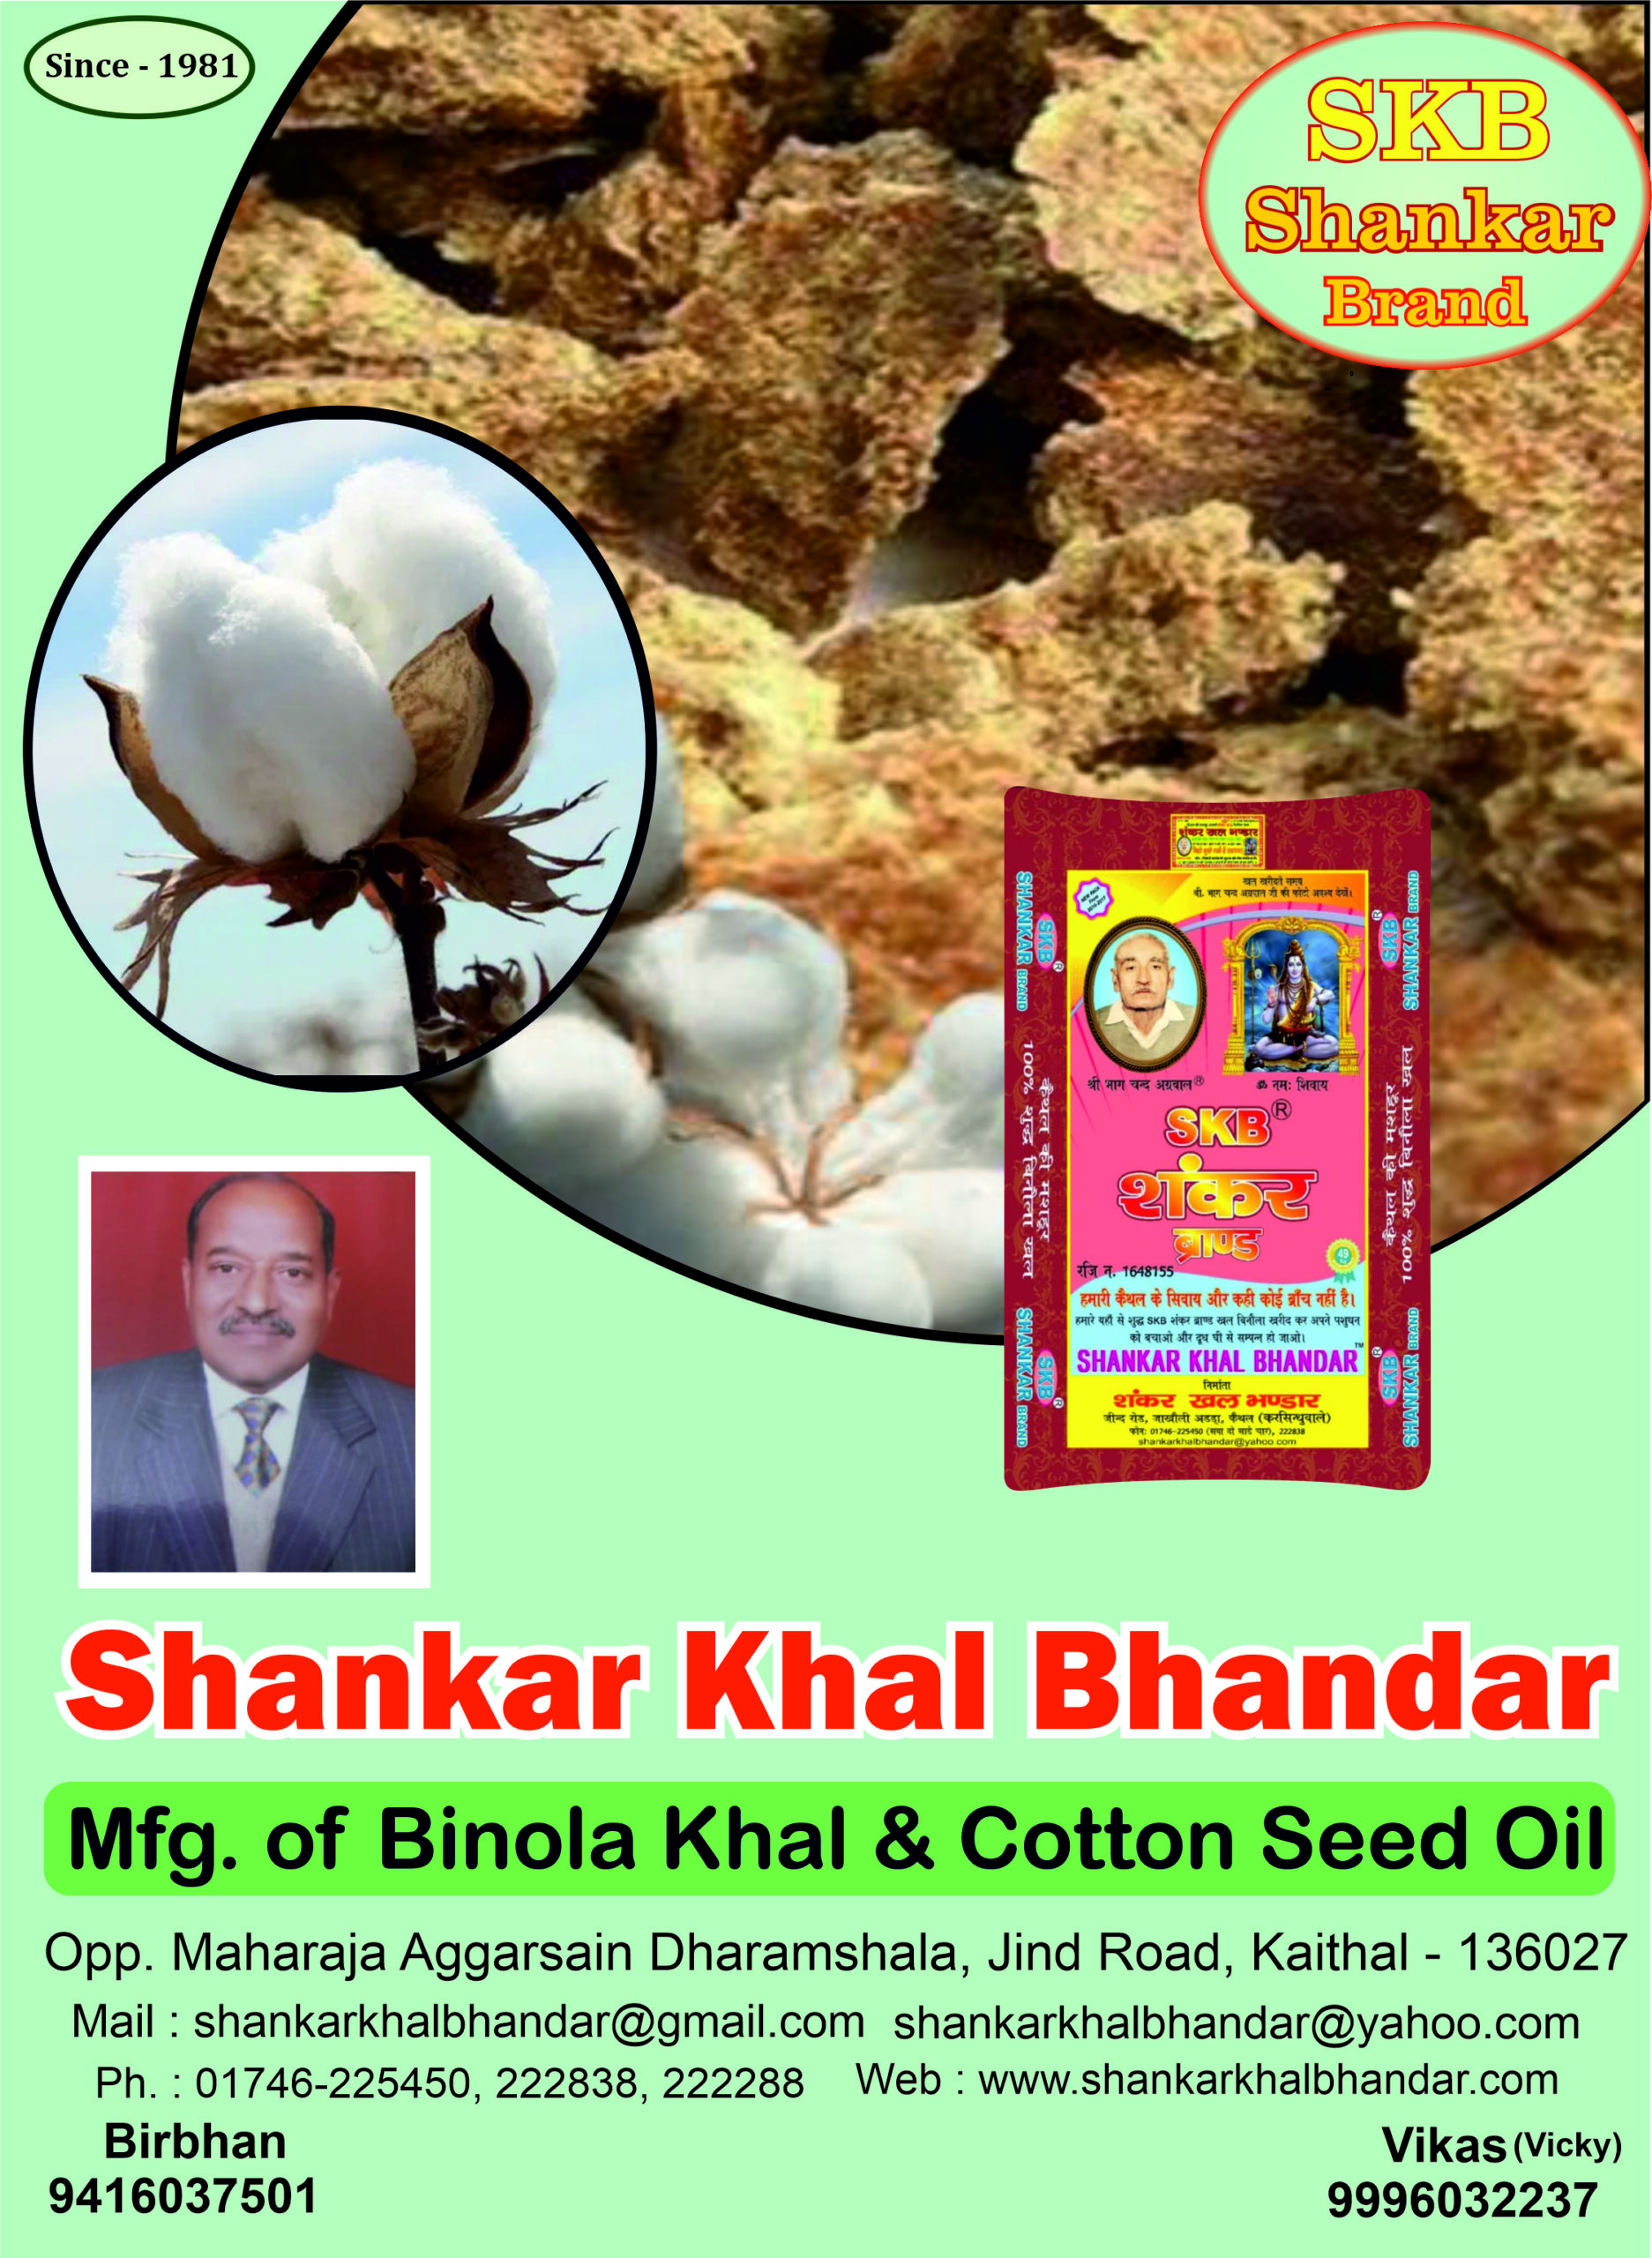 Shankar Khal Bhandar